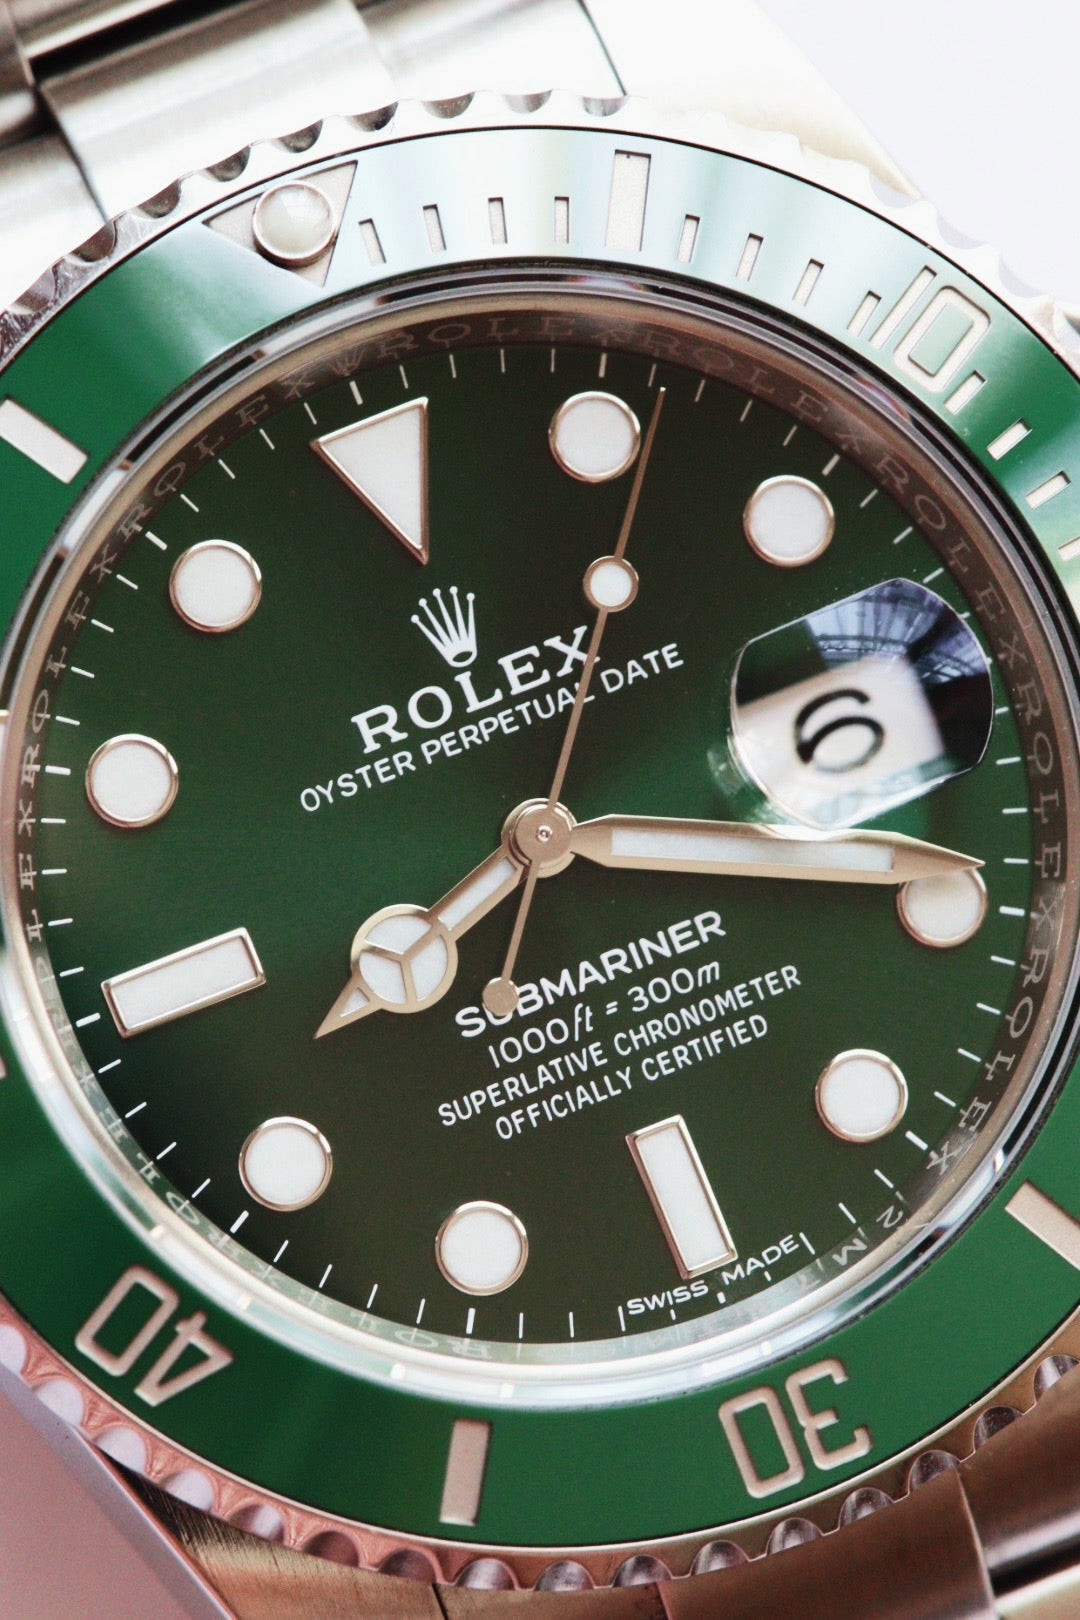 Rolex Submariner 116610LV Hulk Watch